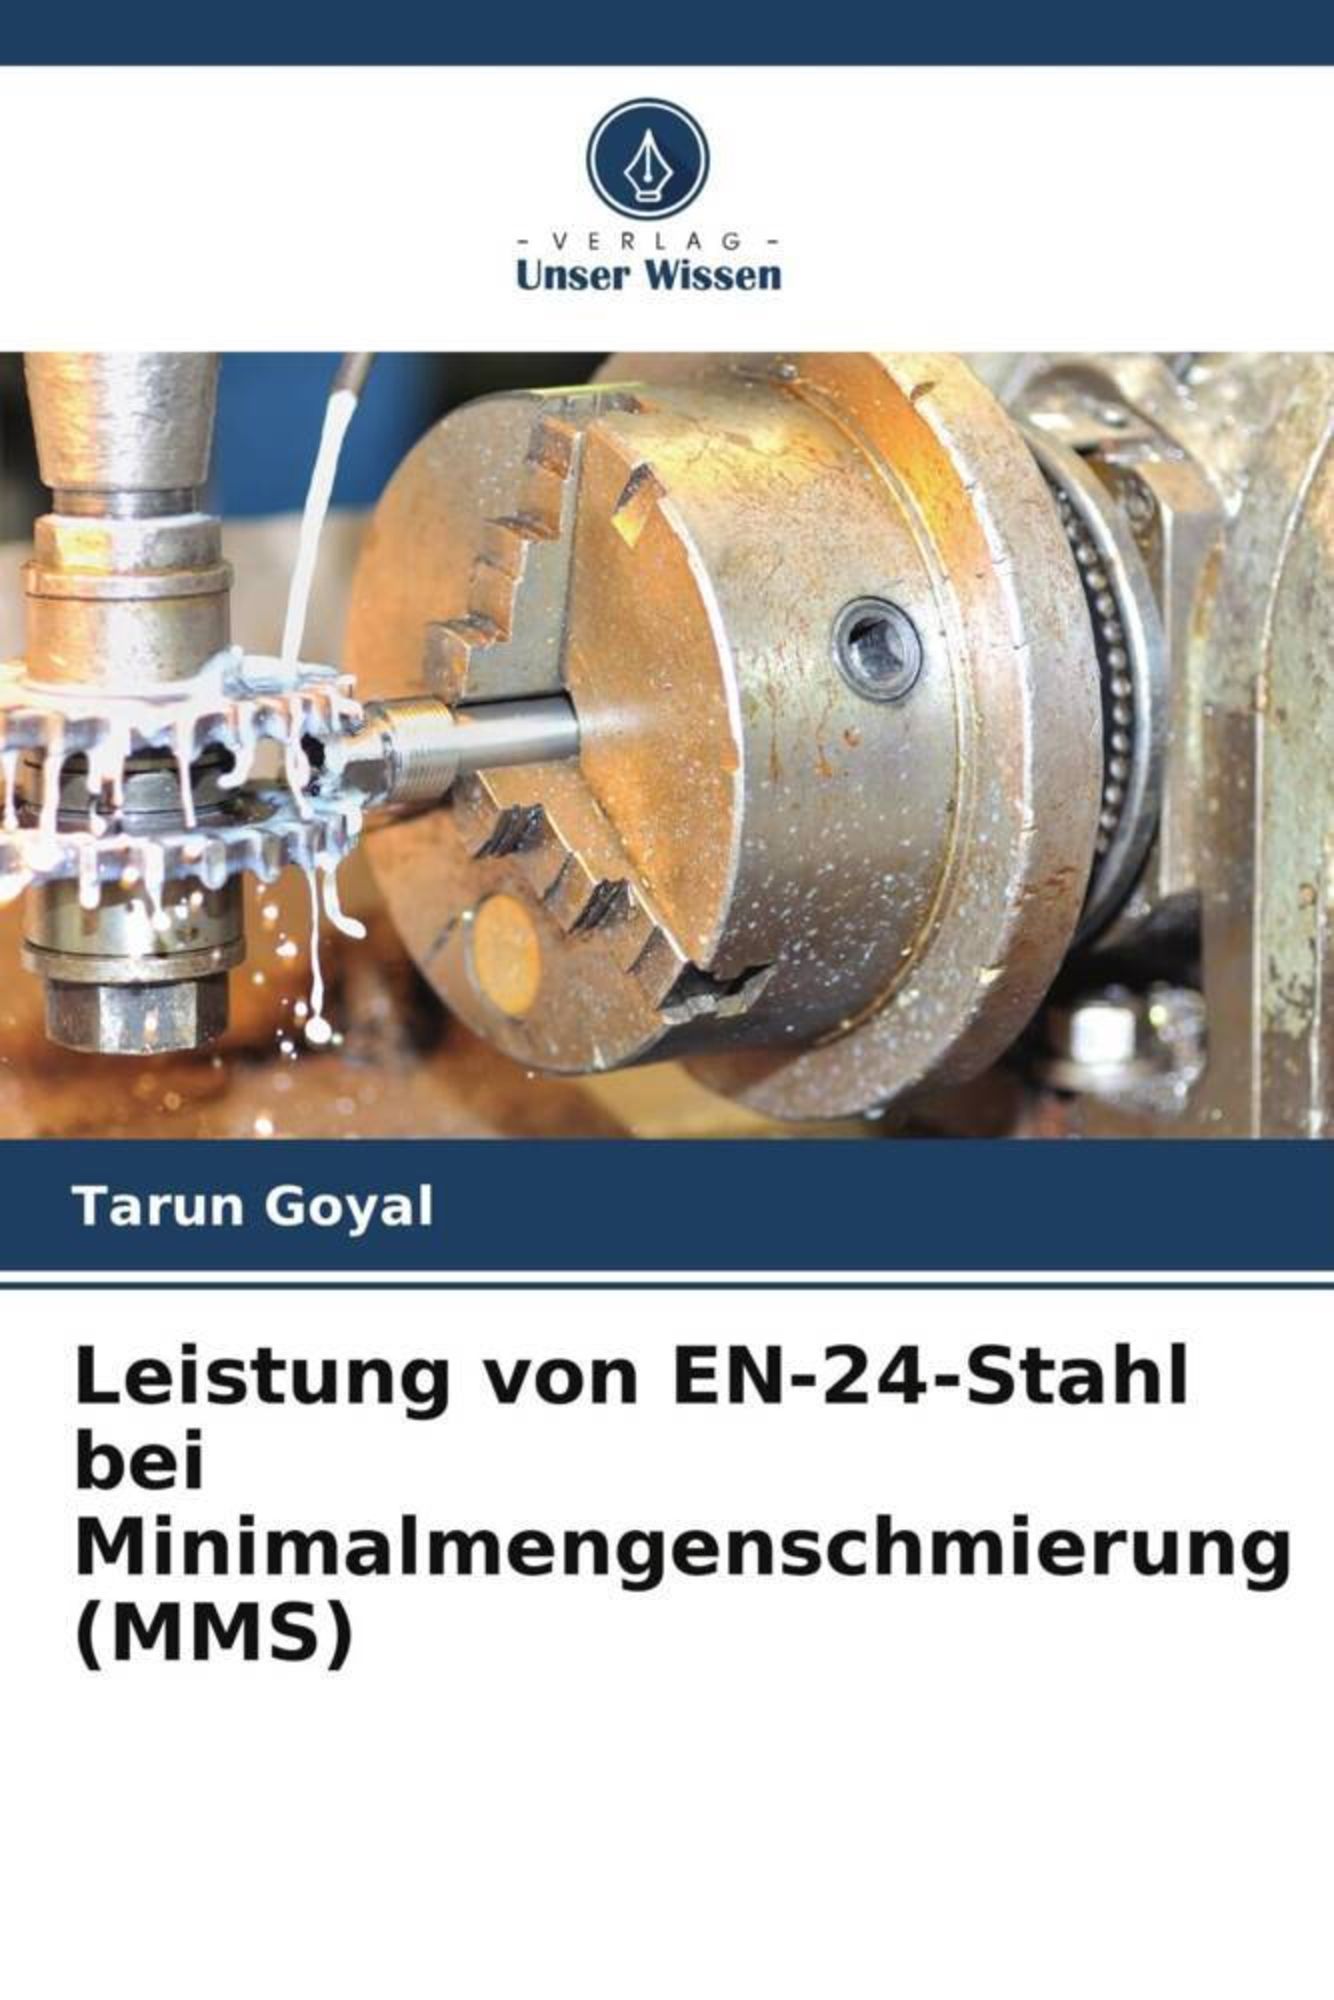 Leistung von EN-24-Stahl bei Minimalmengenschmierung (MMS)' von